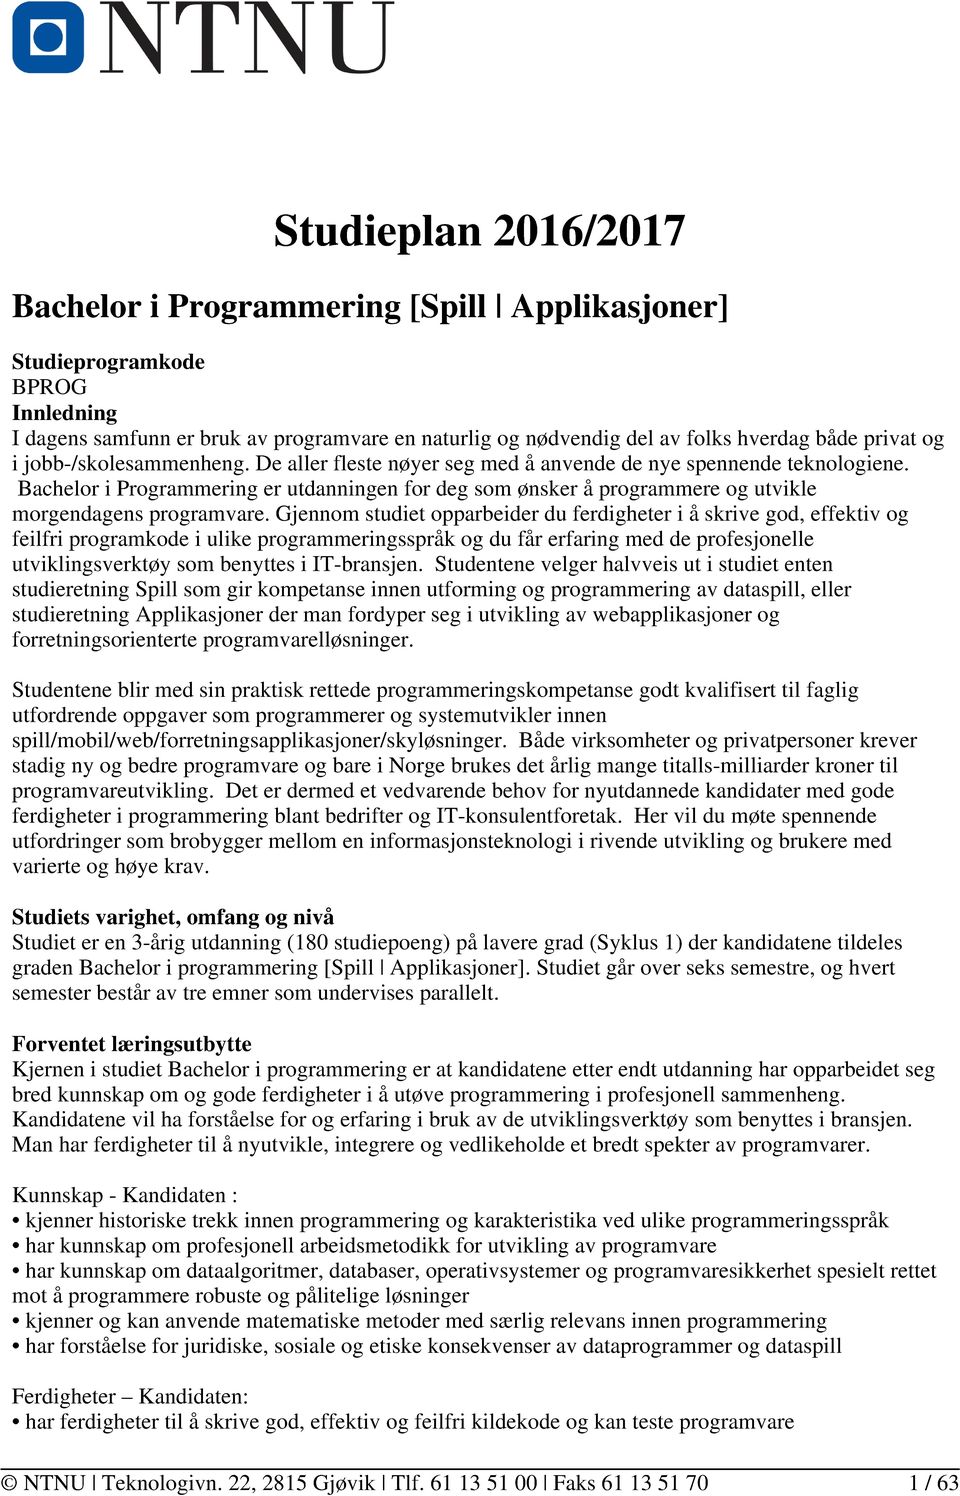 Bachelor i Programmering er utdanningen for deg som ønsker å programmere og utvikle morgendagens programvare.